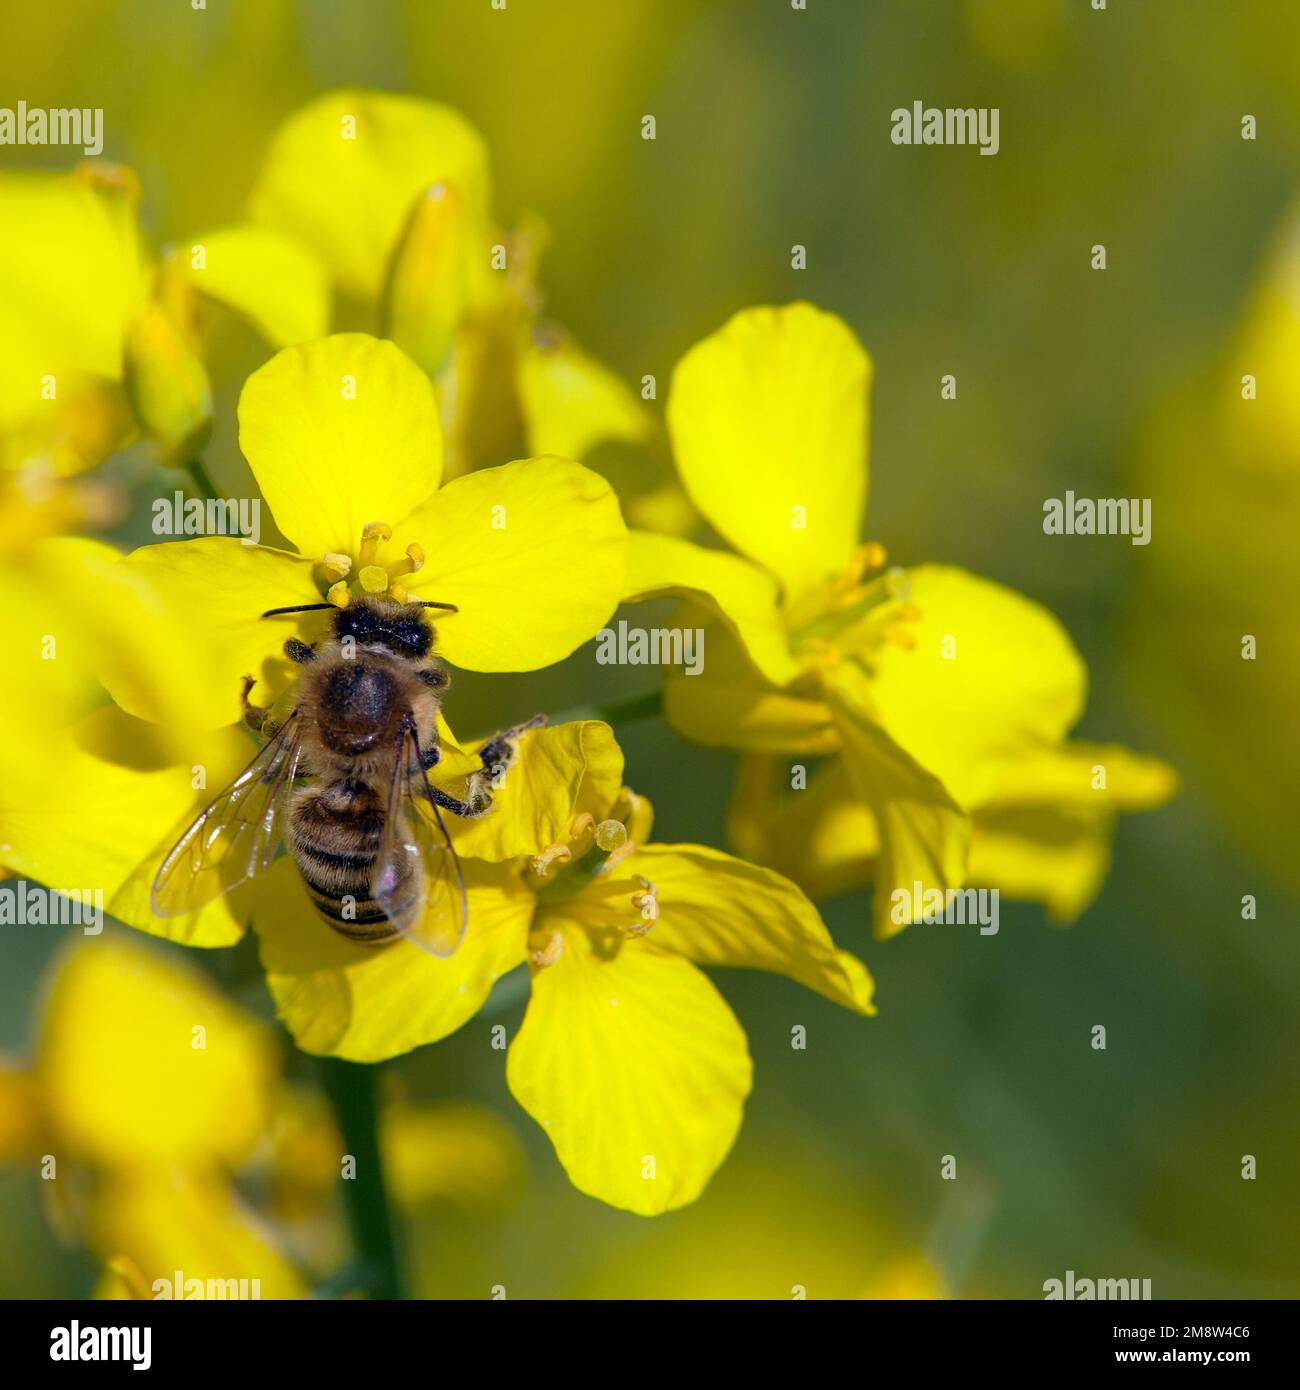 Detail der Biene oder Honigbiene in Latein APIs Mellifera, europäische oder westliche Honigbiene, die auf einer gelben Blume des Raps sitzt Stockfoto